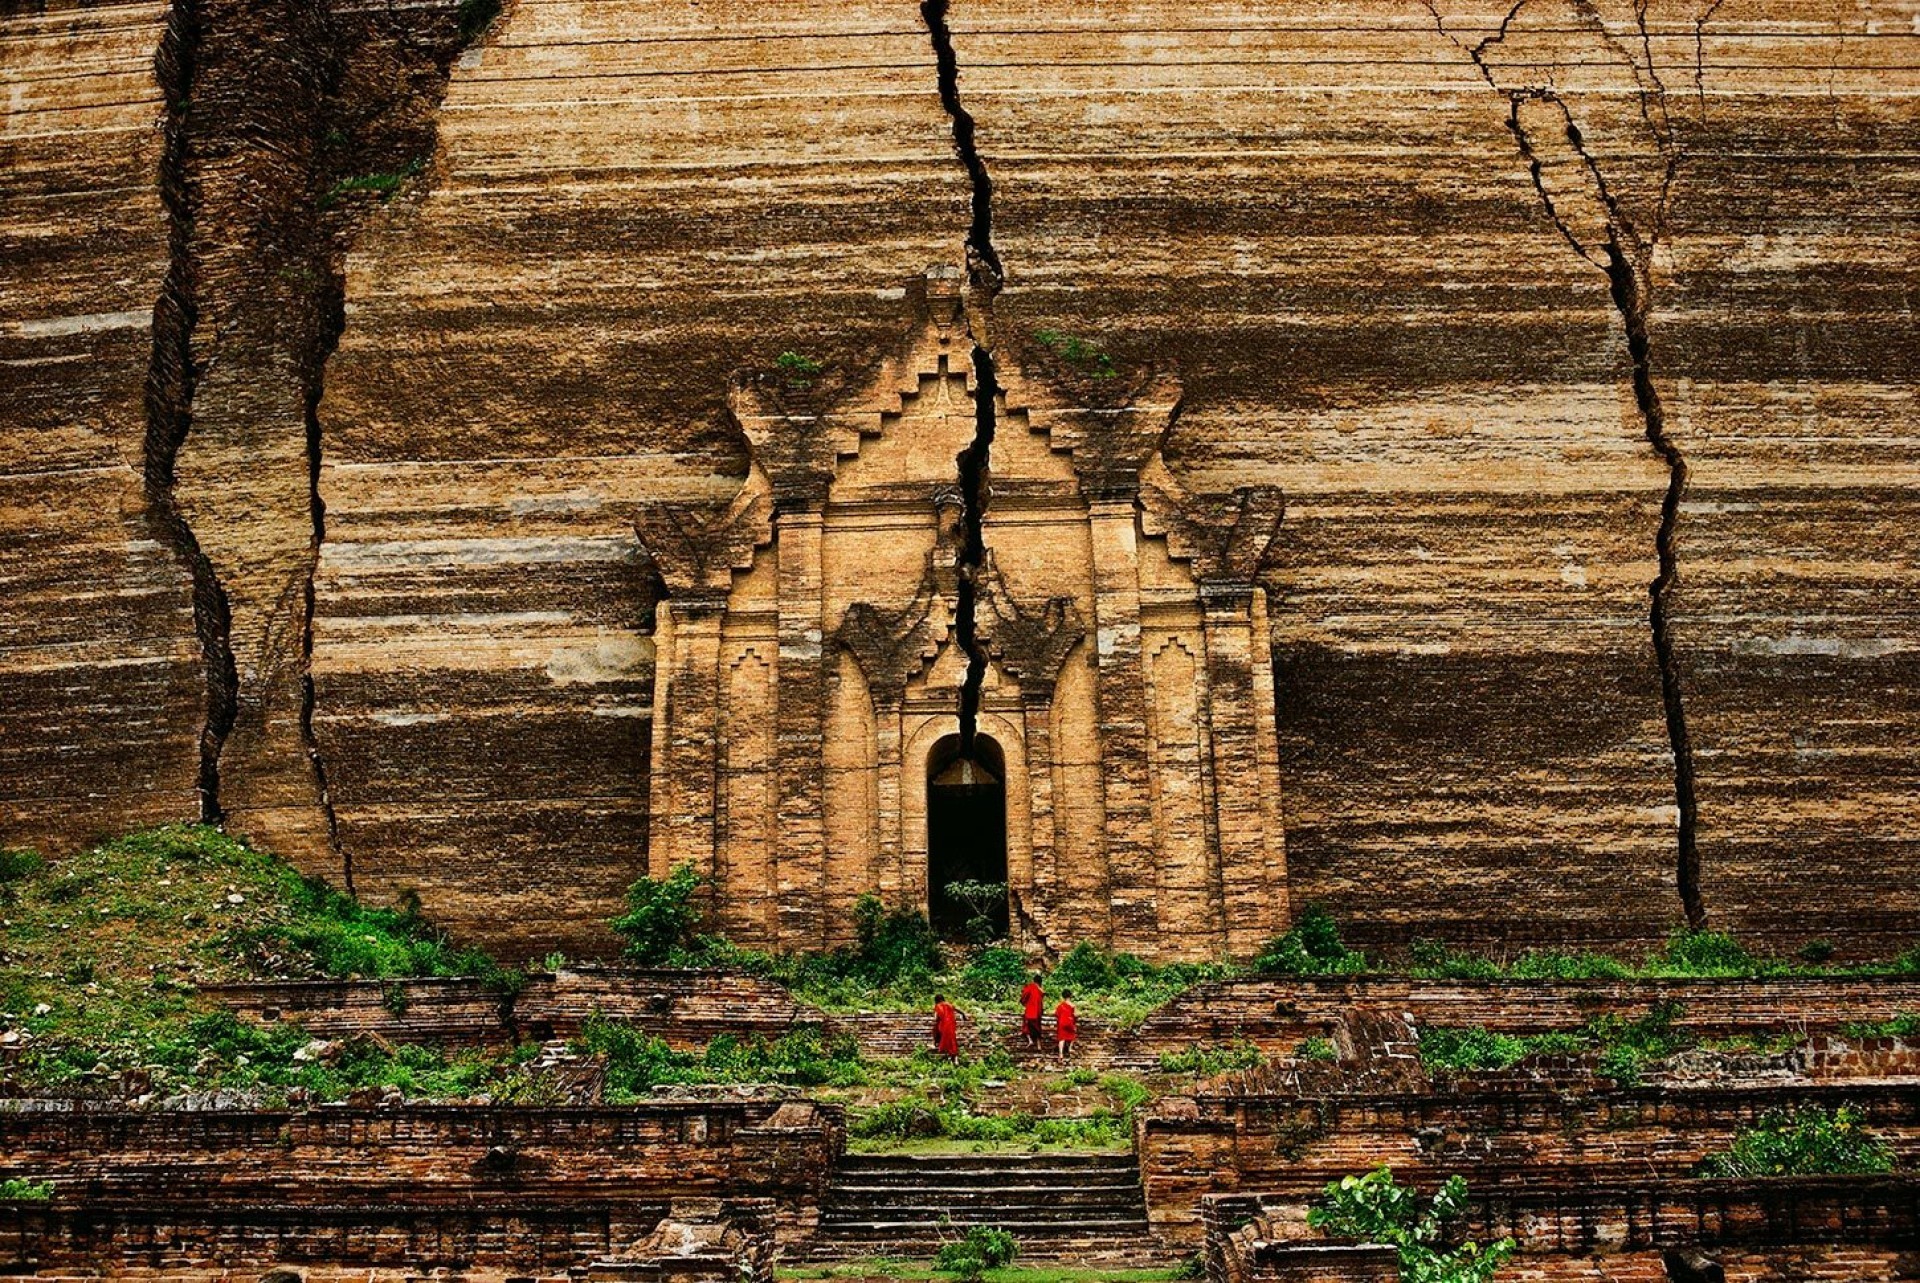 Мандалай, Мьянма, 1994. Автор Стив Маккарри